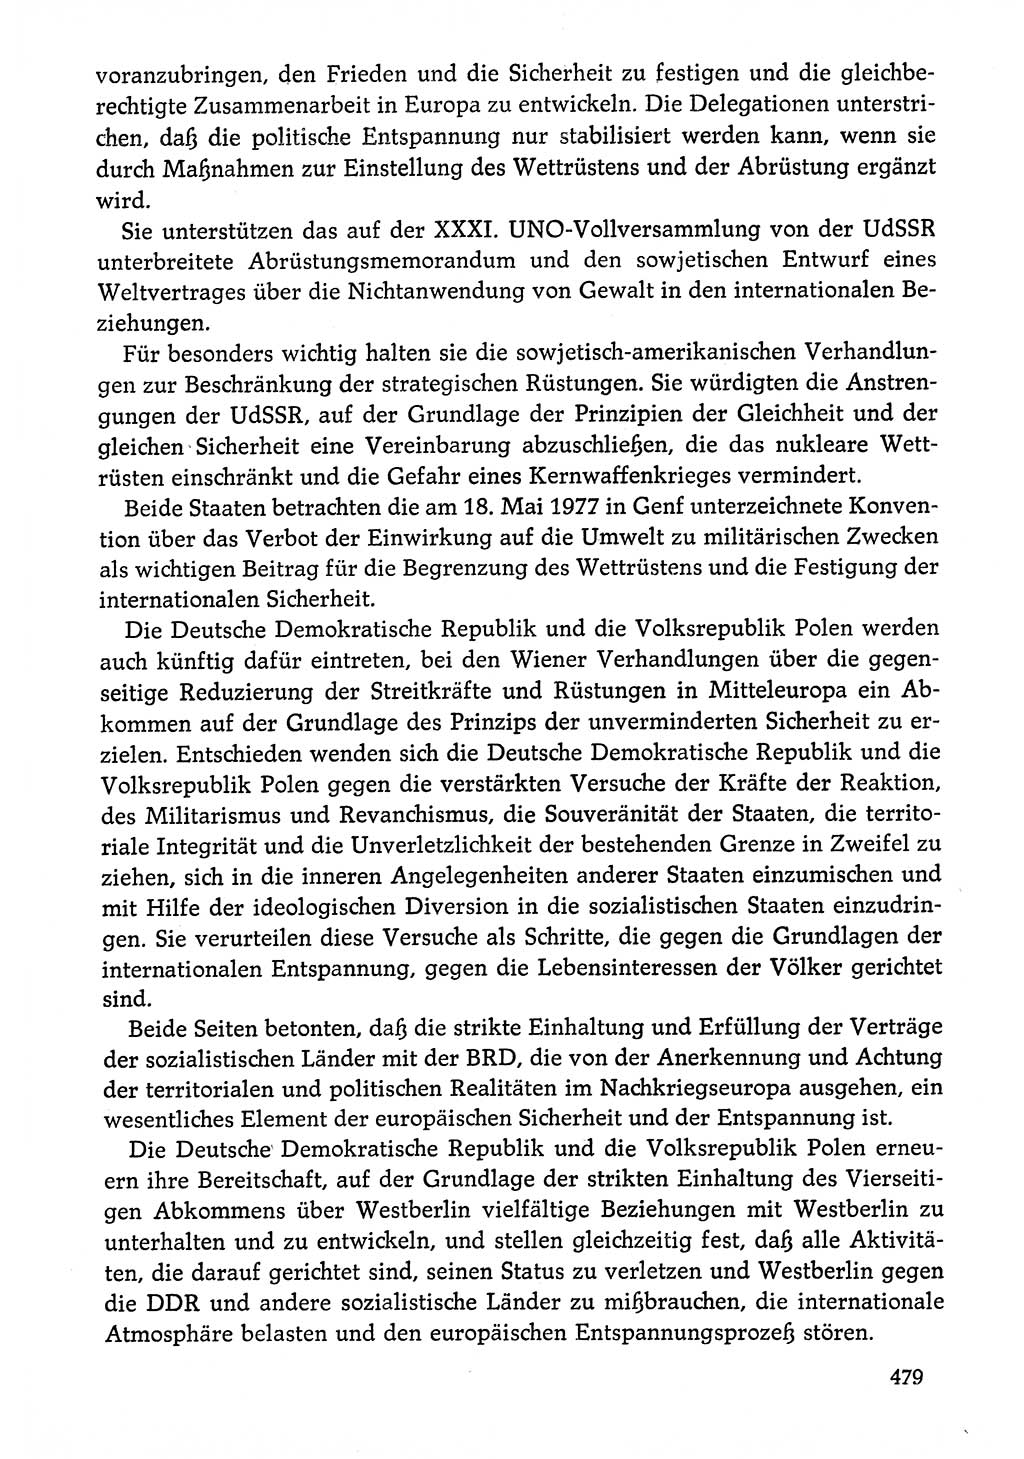 Dokumente der Sozialistischen Einheitspartei Deutschlands (SED) [Deutsche Demokratische Republik (DDR)] 1976-1977, Seite 479 (Dok. SED DDR 1976-1977, S. 479)